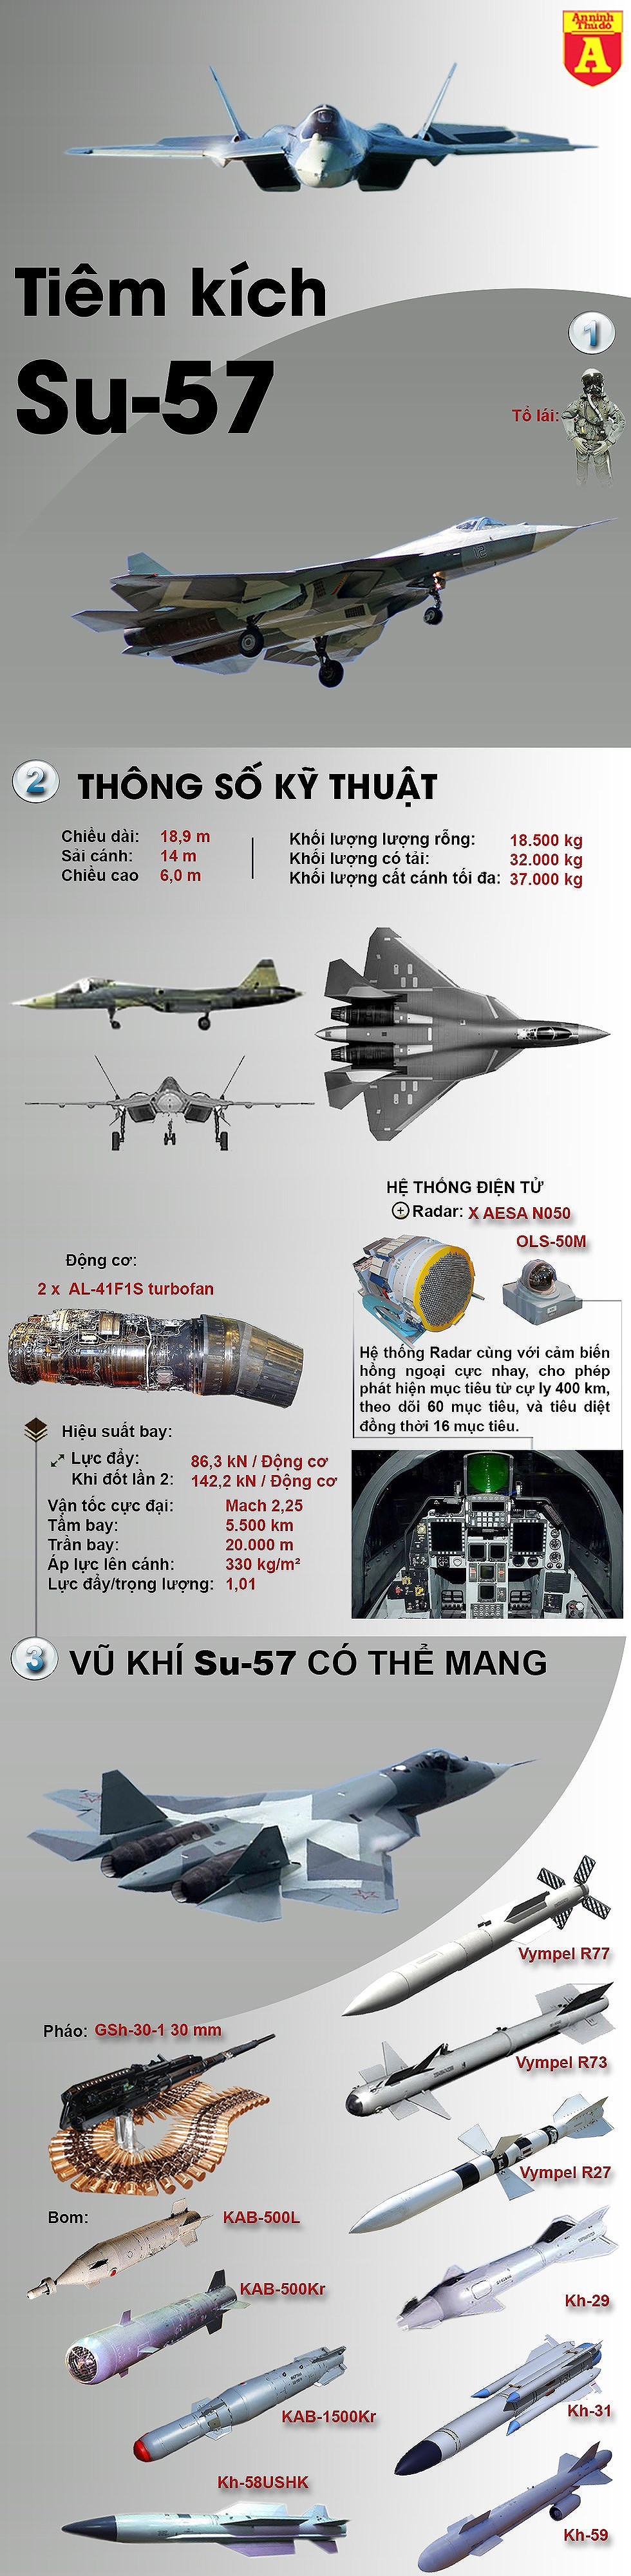 [Infographics] Su-57 thiếu động cơ, Nga khó chào hàng Thổ Nhĩ Kỳ - Ảnh 1